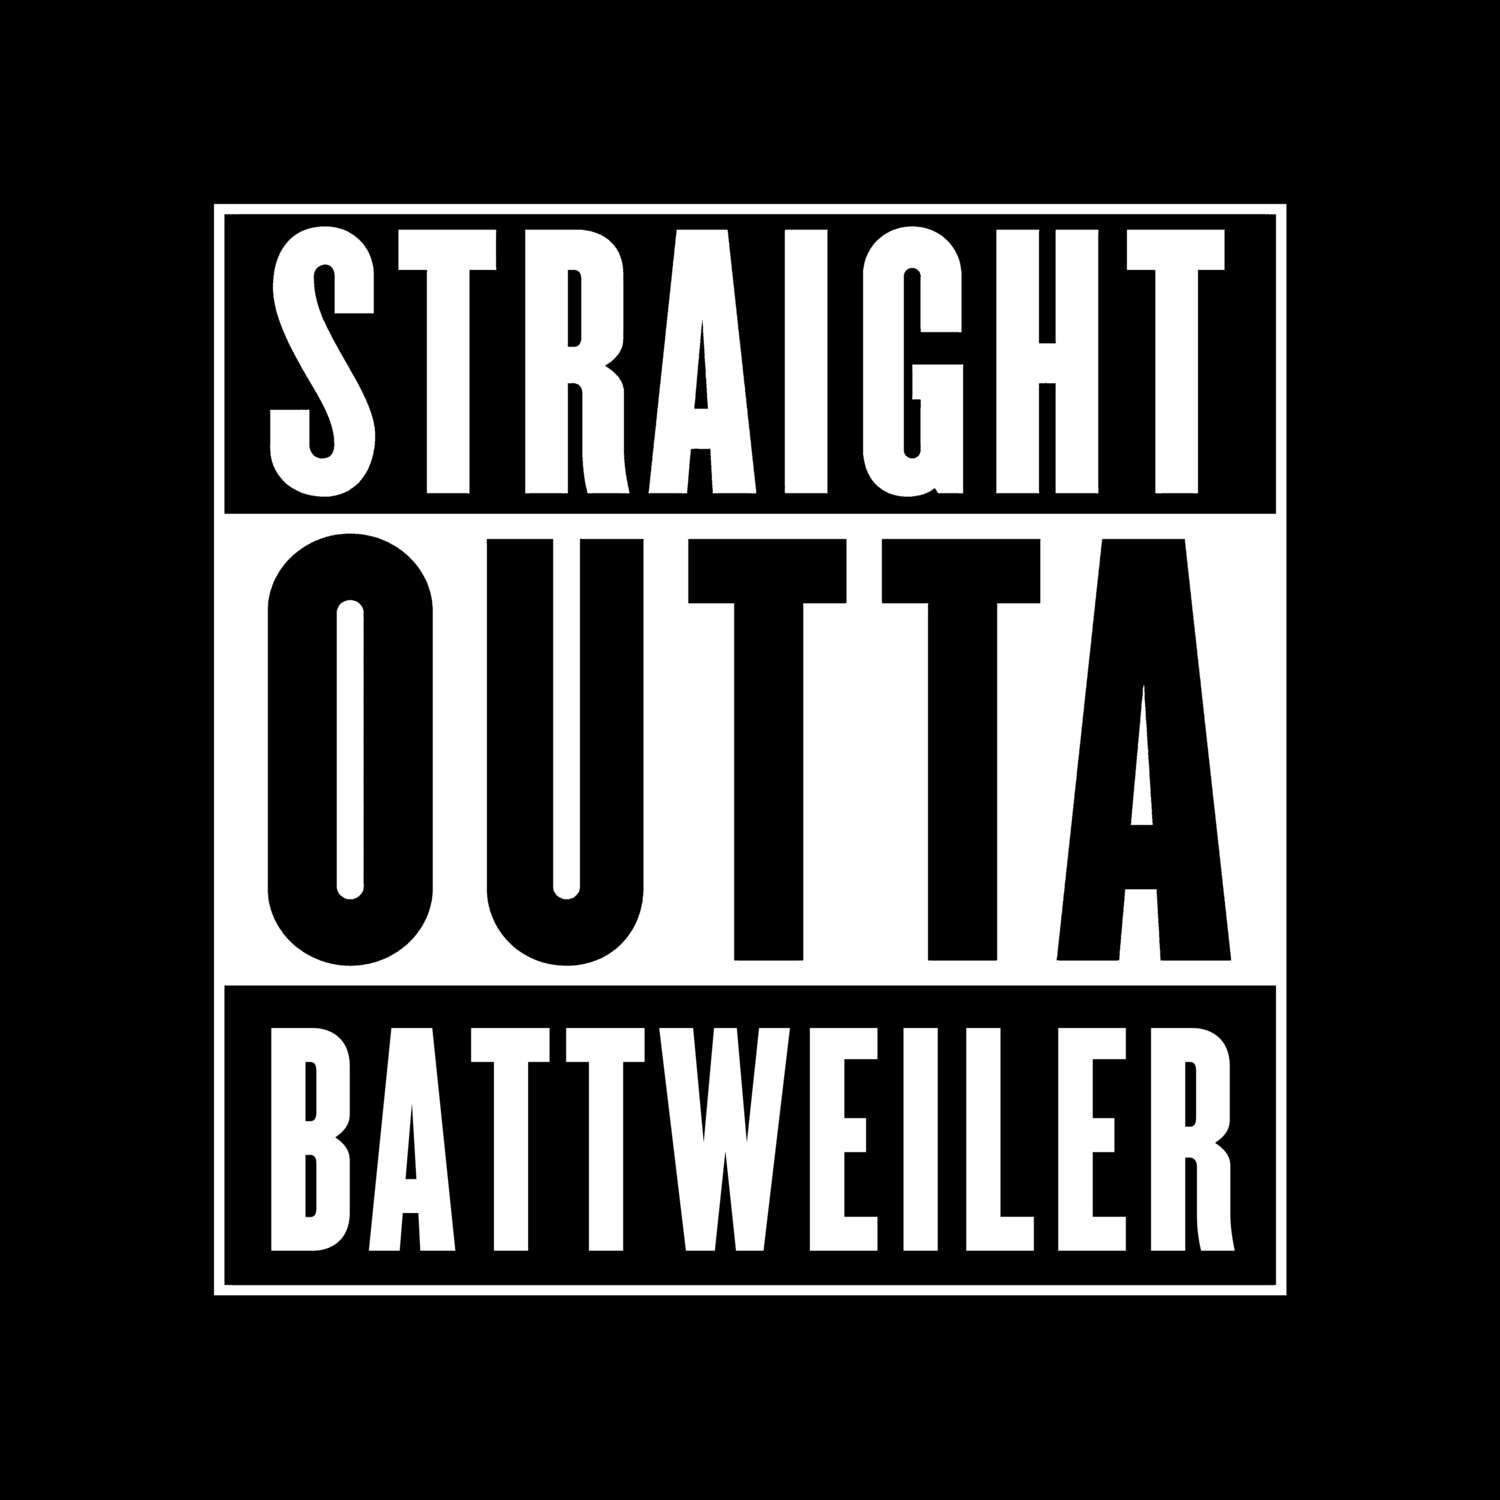 Battweiler T-Shirt »Straight Outta«